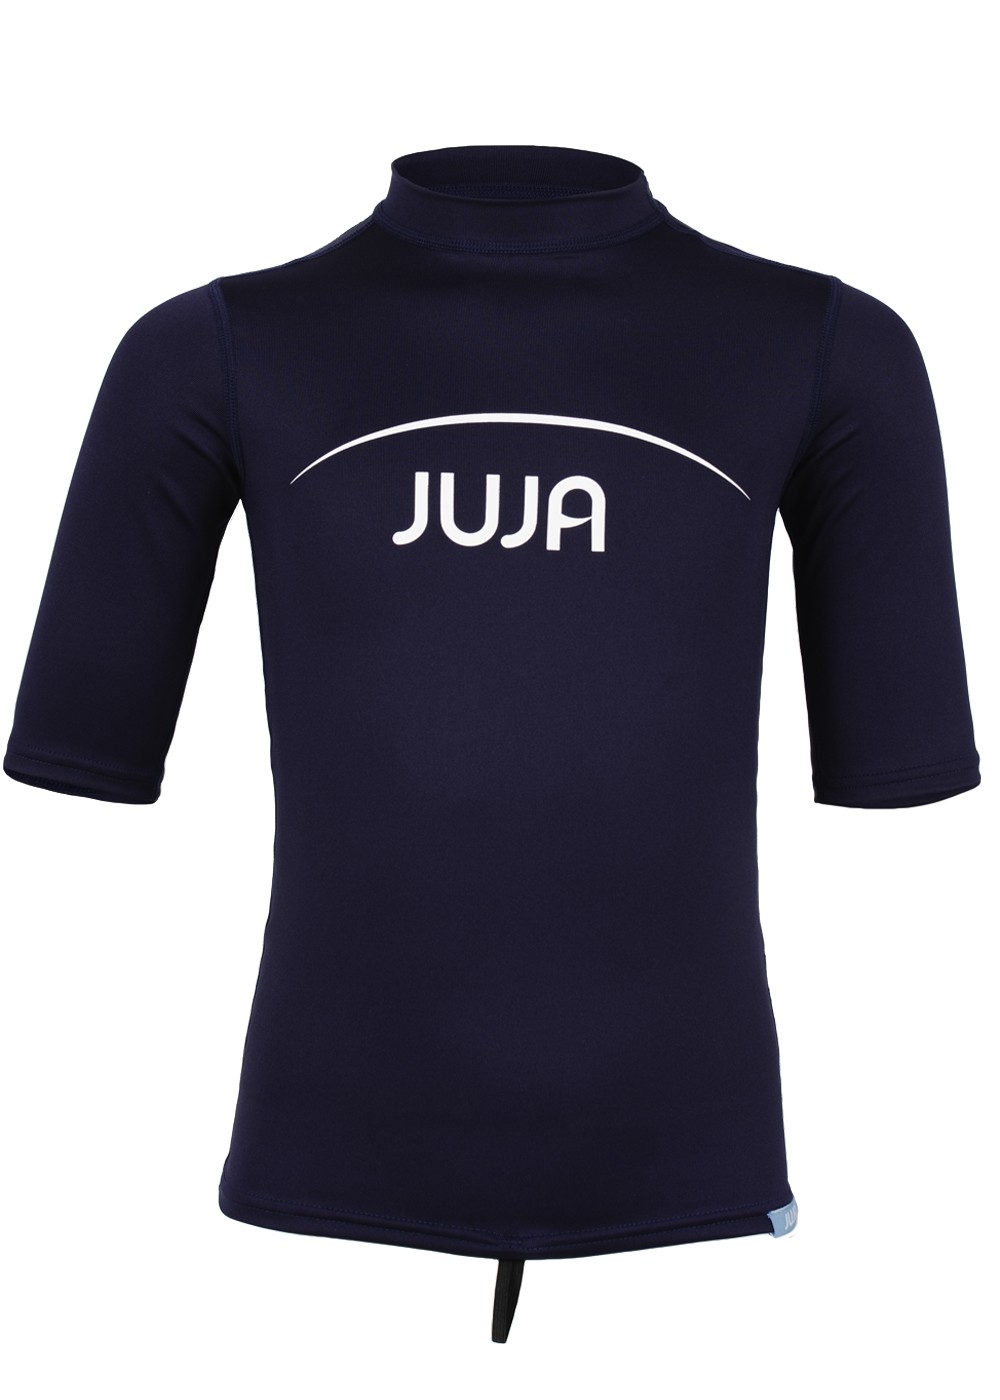 JuJa - UV-Badeshirt für Kinder - Kurzärmlig - Marineblau